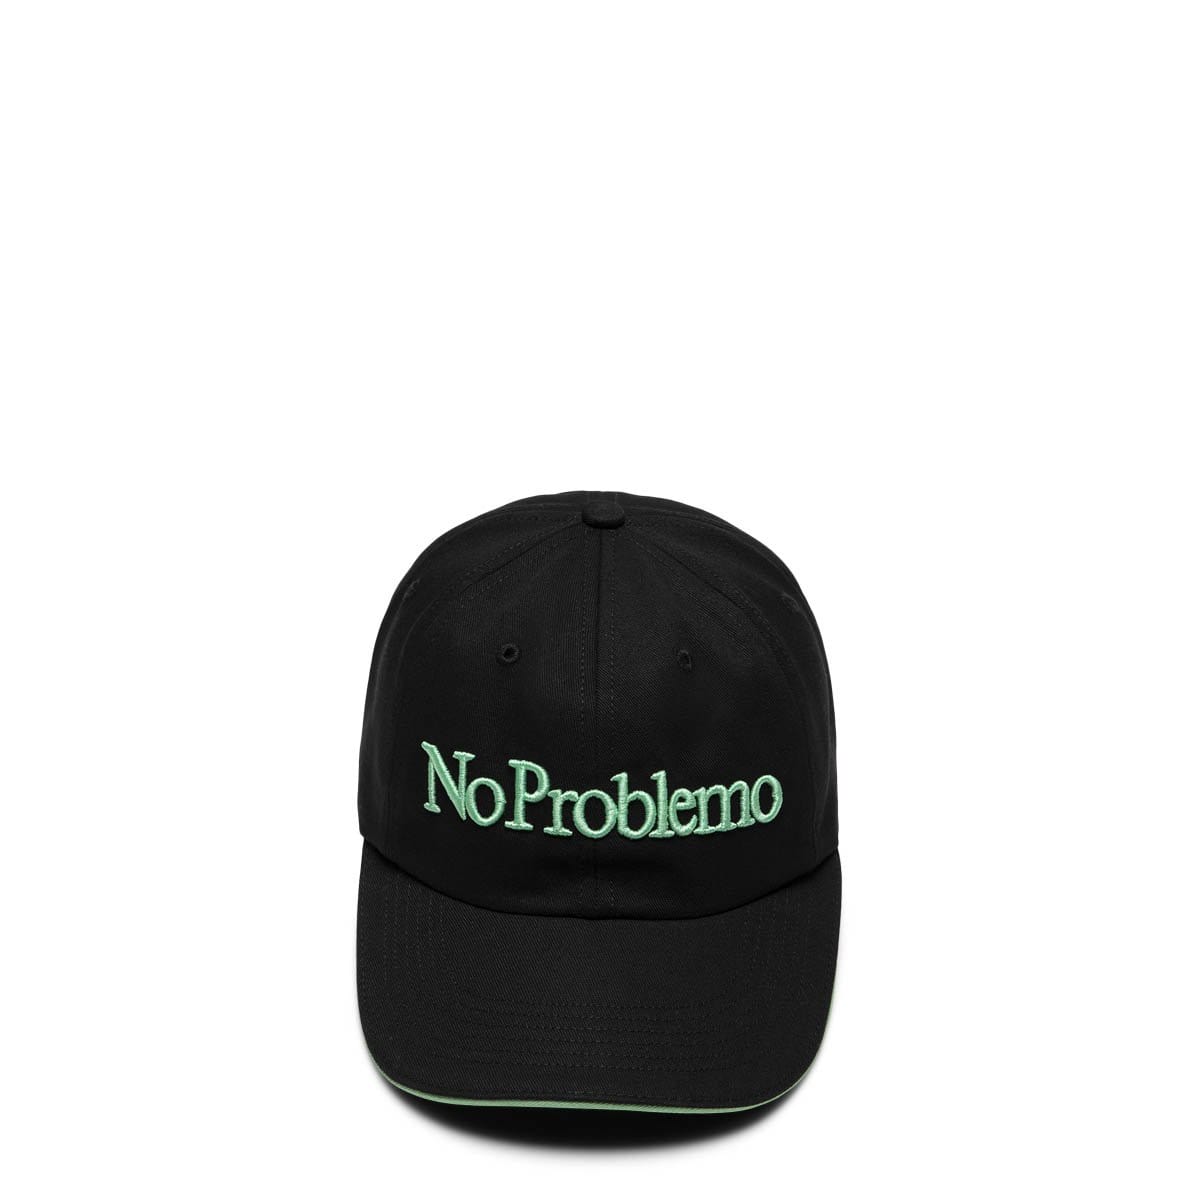 Aries Headwear BLACK / OS NO PROBLEMO CAP